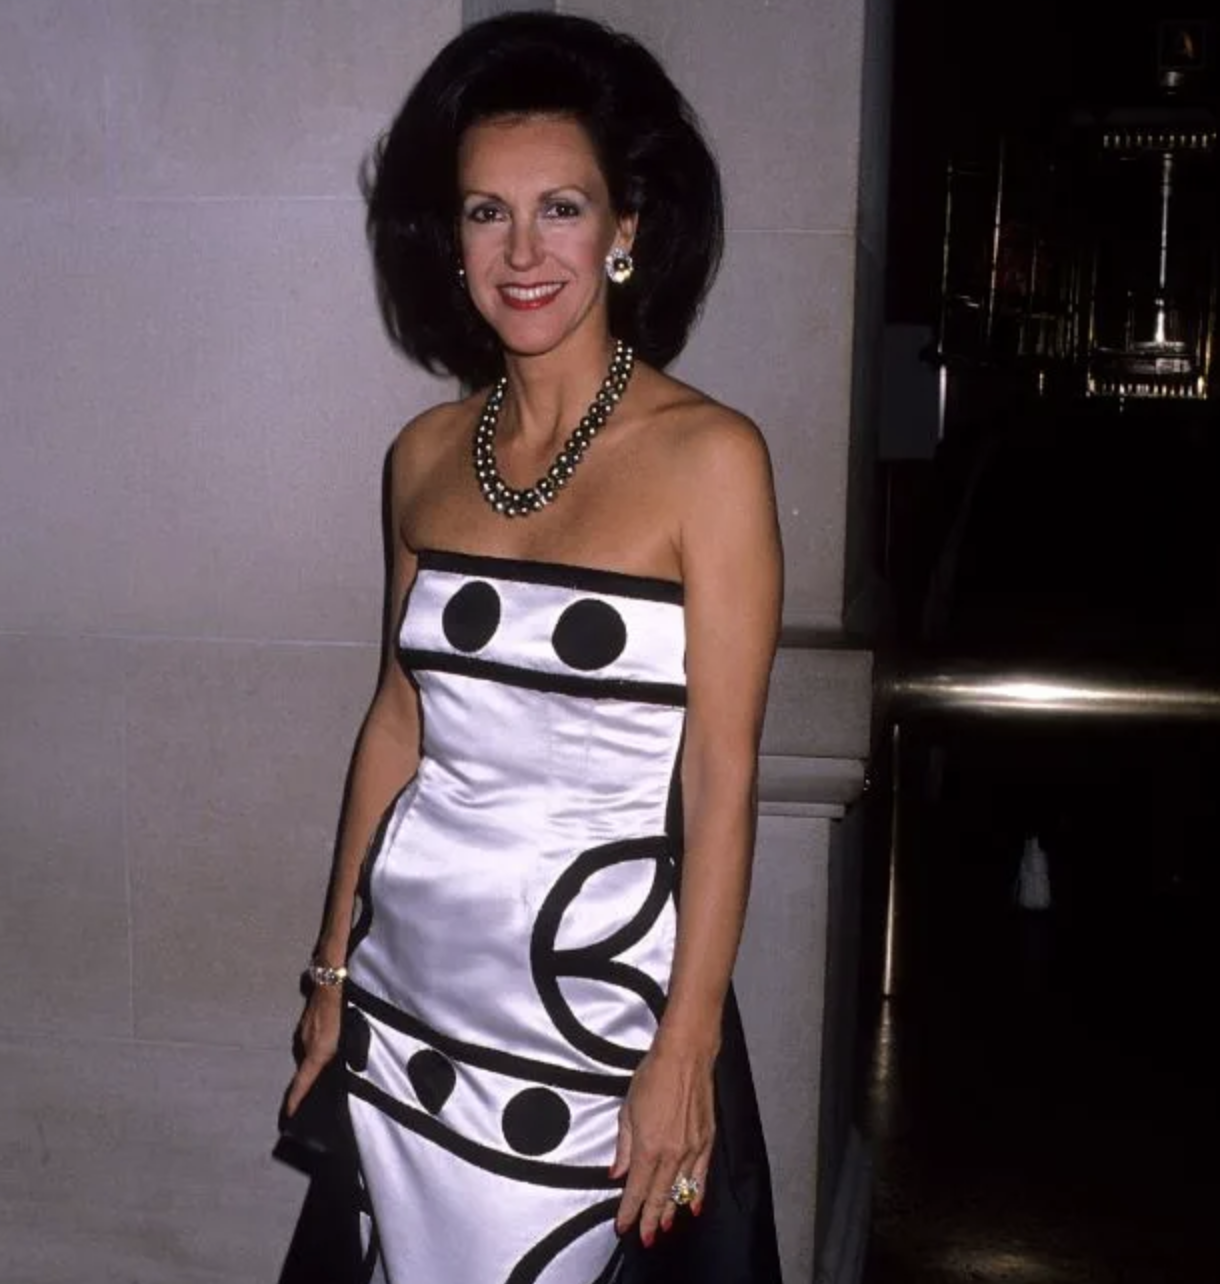 Mujer sonriendo en evento, vestido sin mangas blanco con adornos negros y collar de perlas